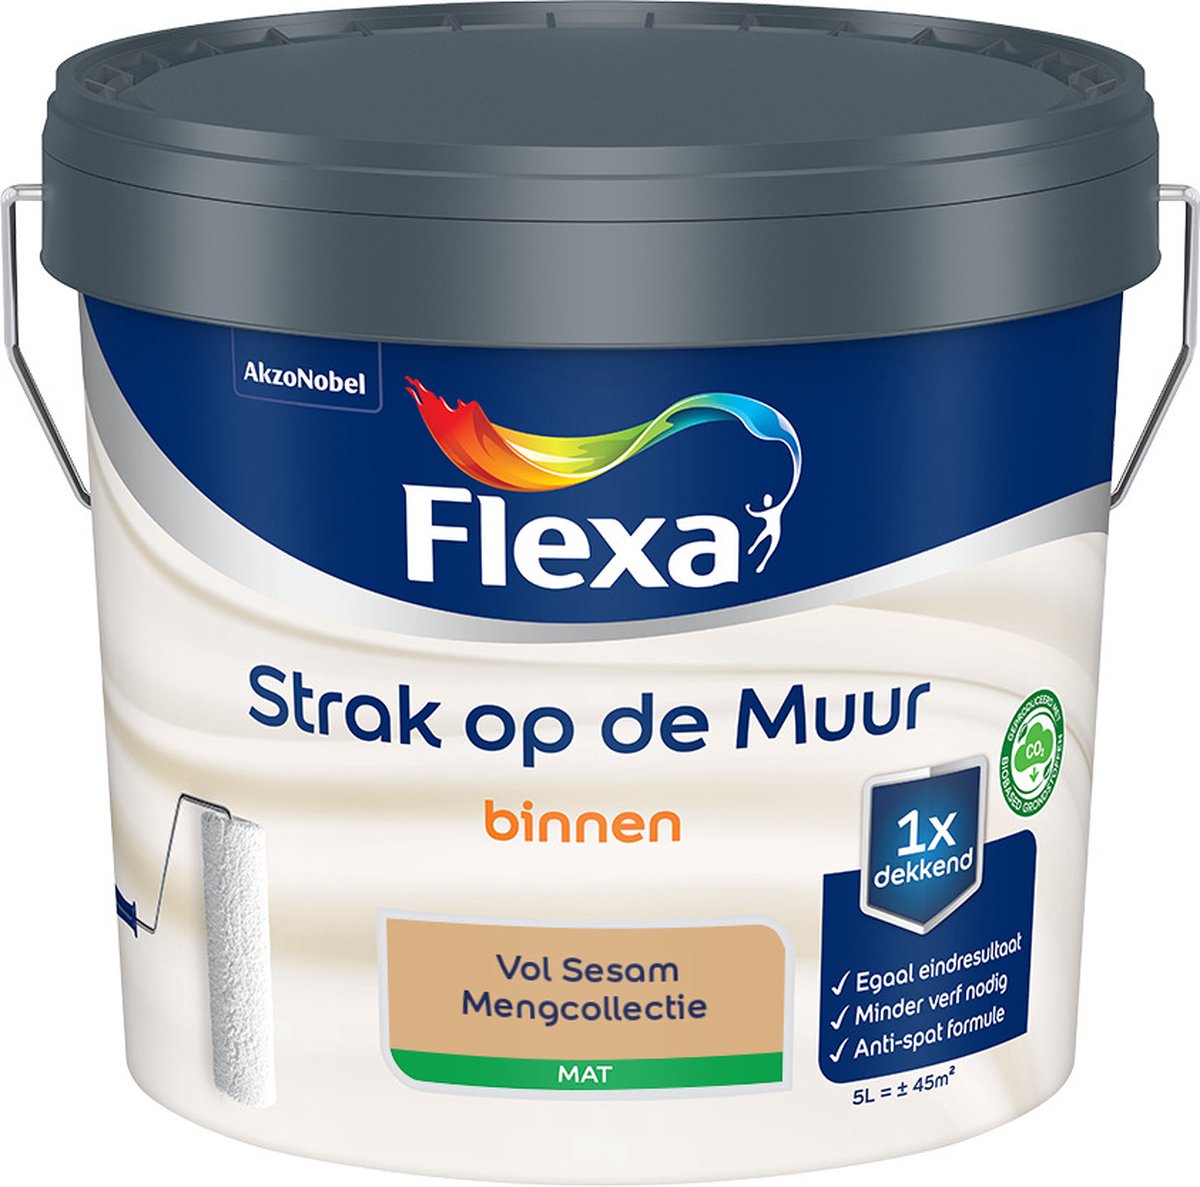 Flexa Strak op de muur - Muurverf - Mengcollectie - Vol Sesam - 5 Liter